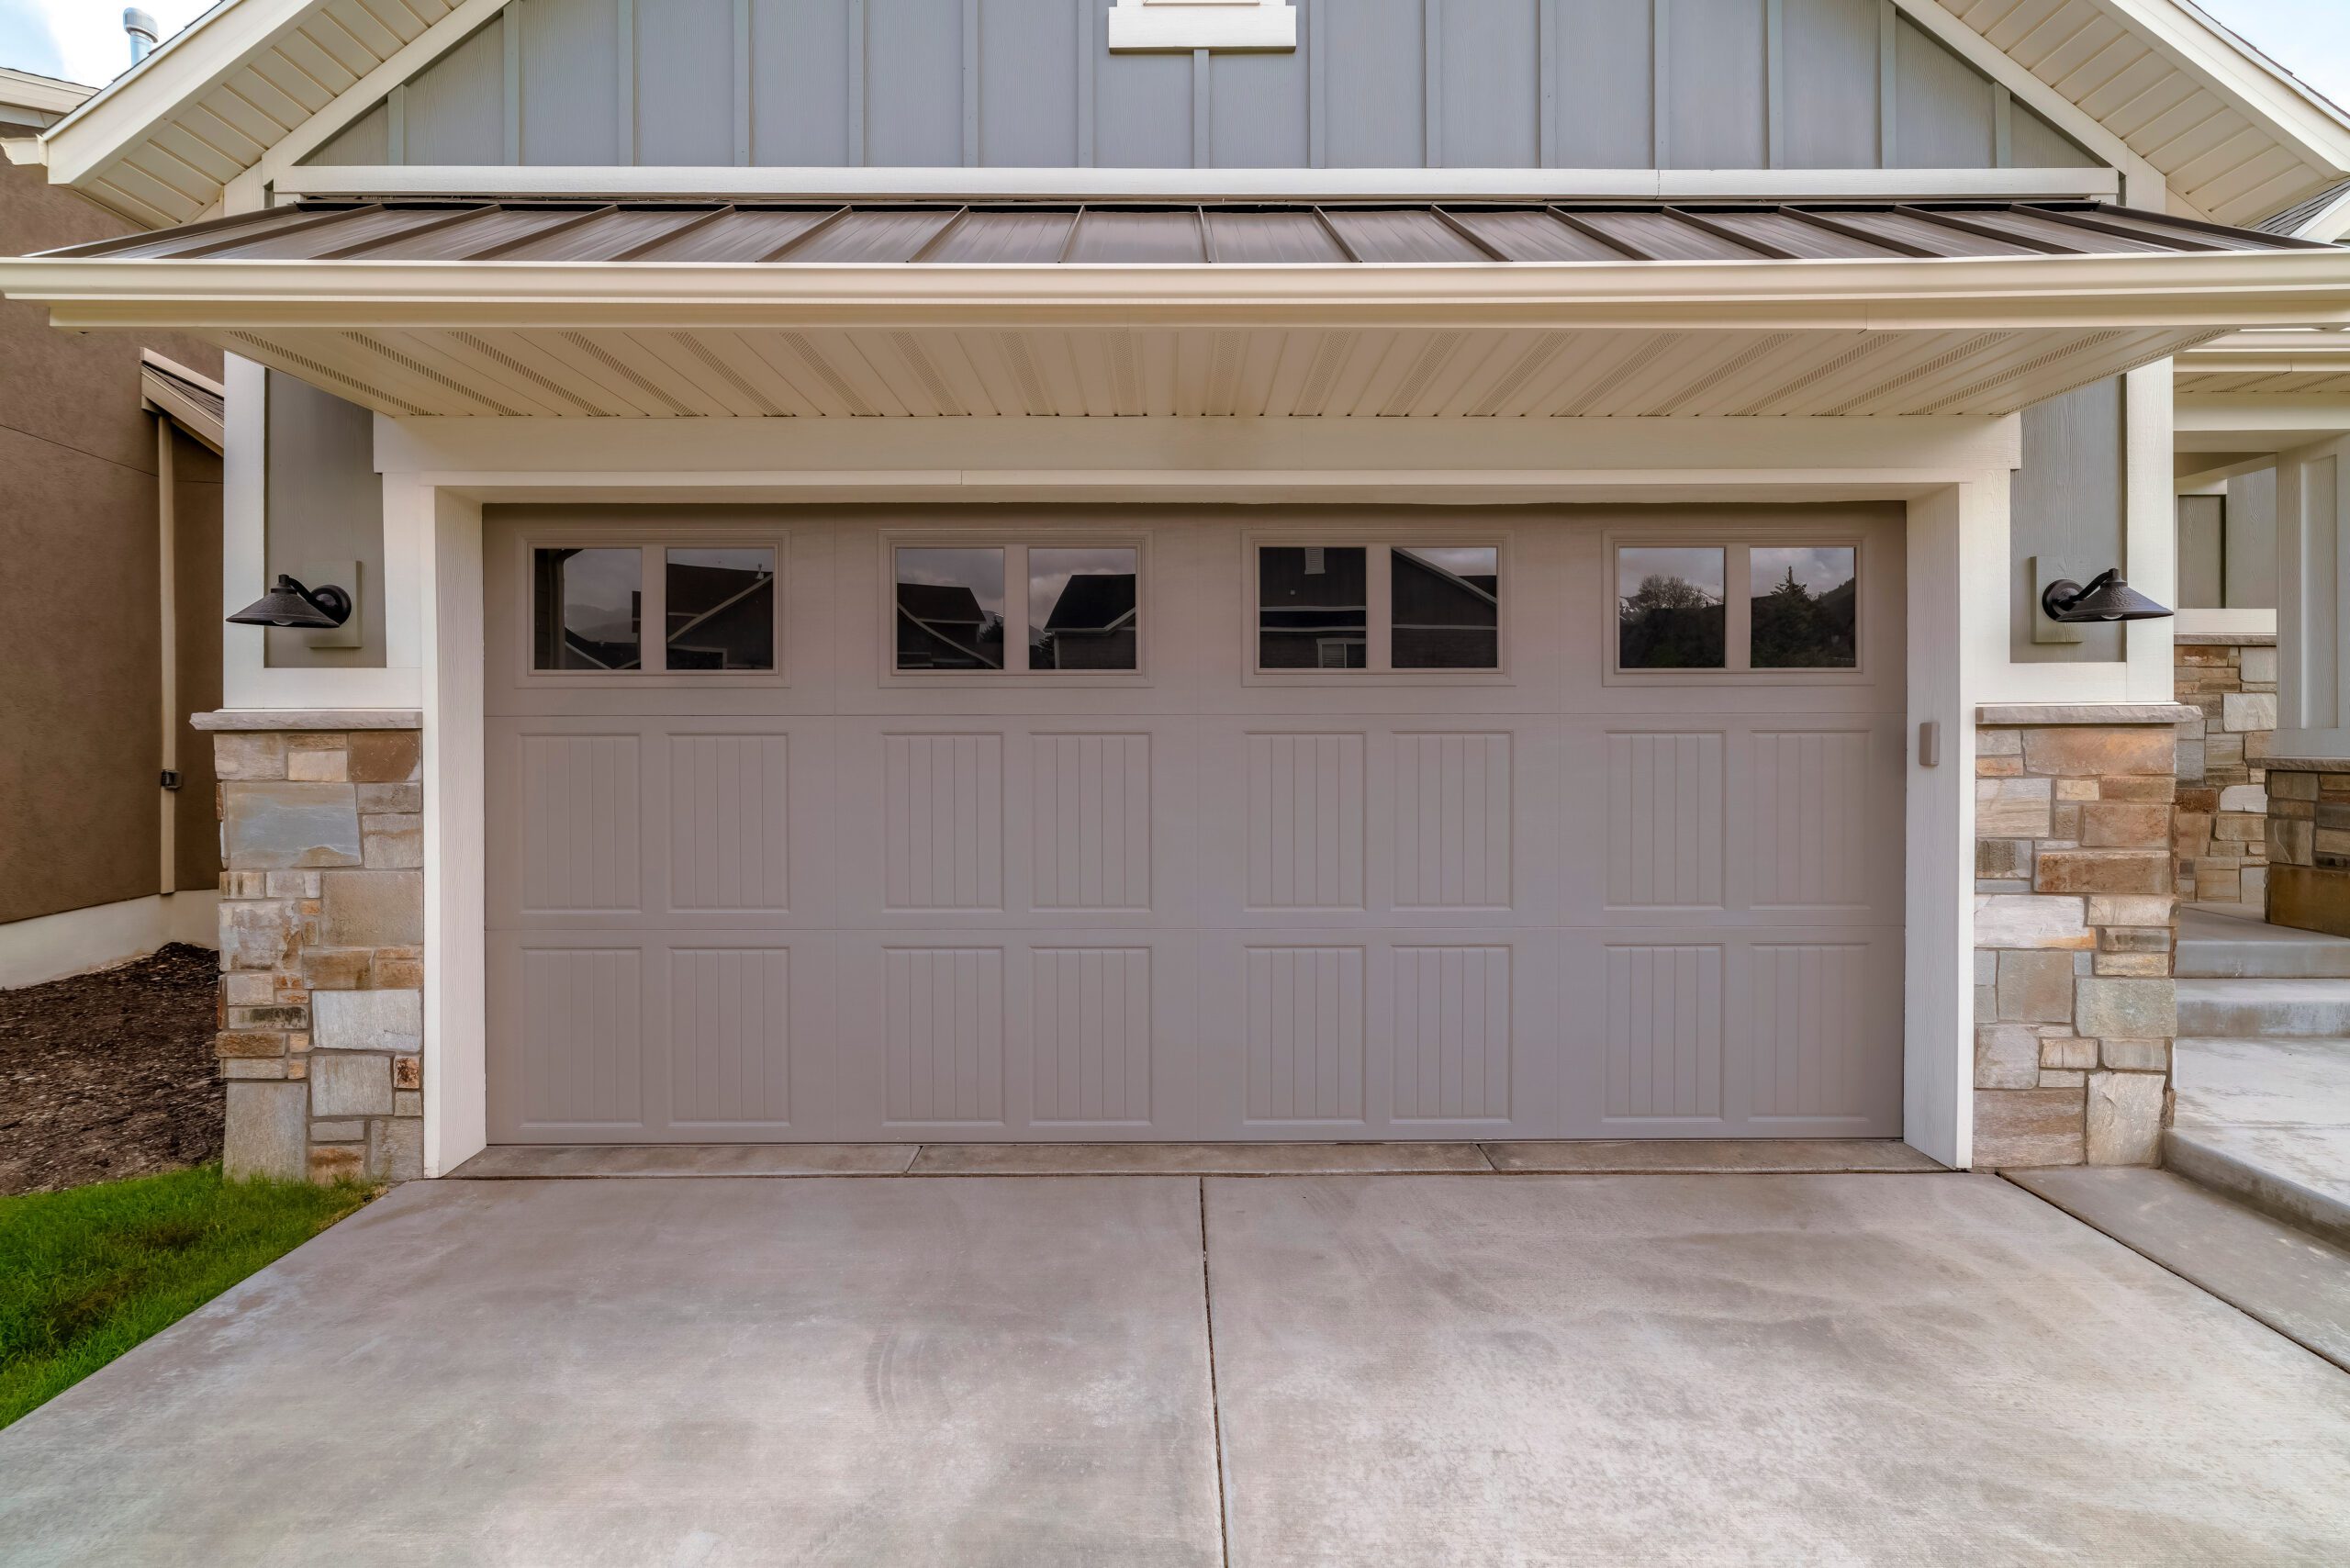 Affordable Garage Door Fix provides expert garage door repair in American Fork, Utah. Contact us at (385)-213-1977 for an estimate.